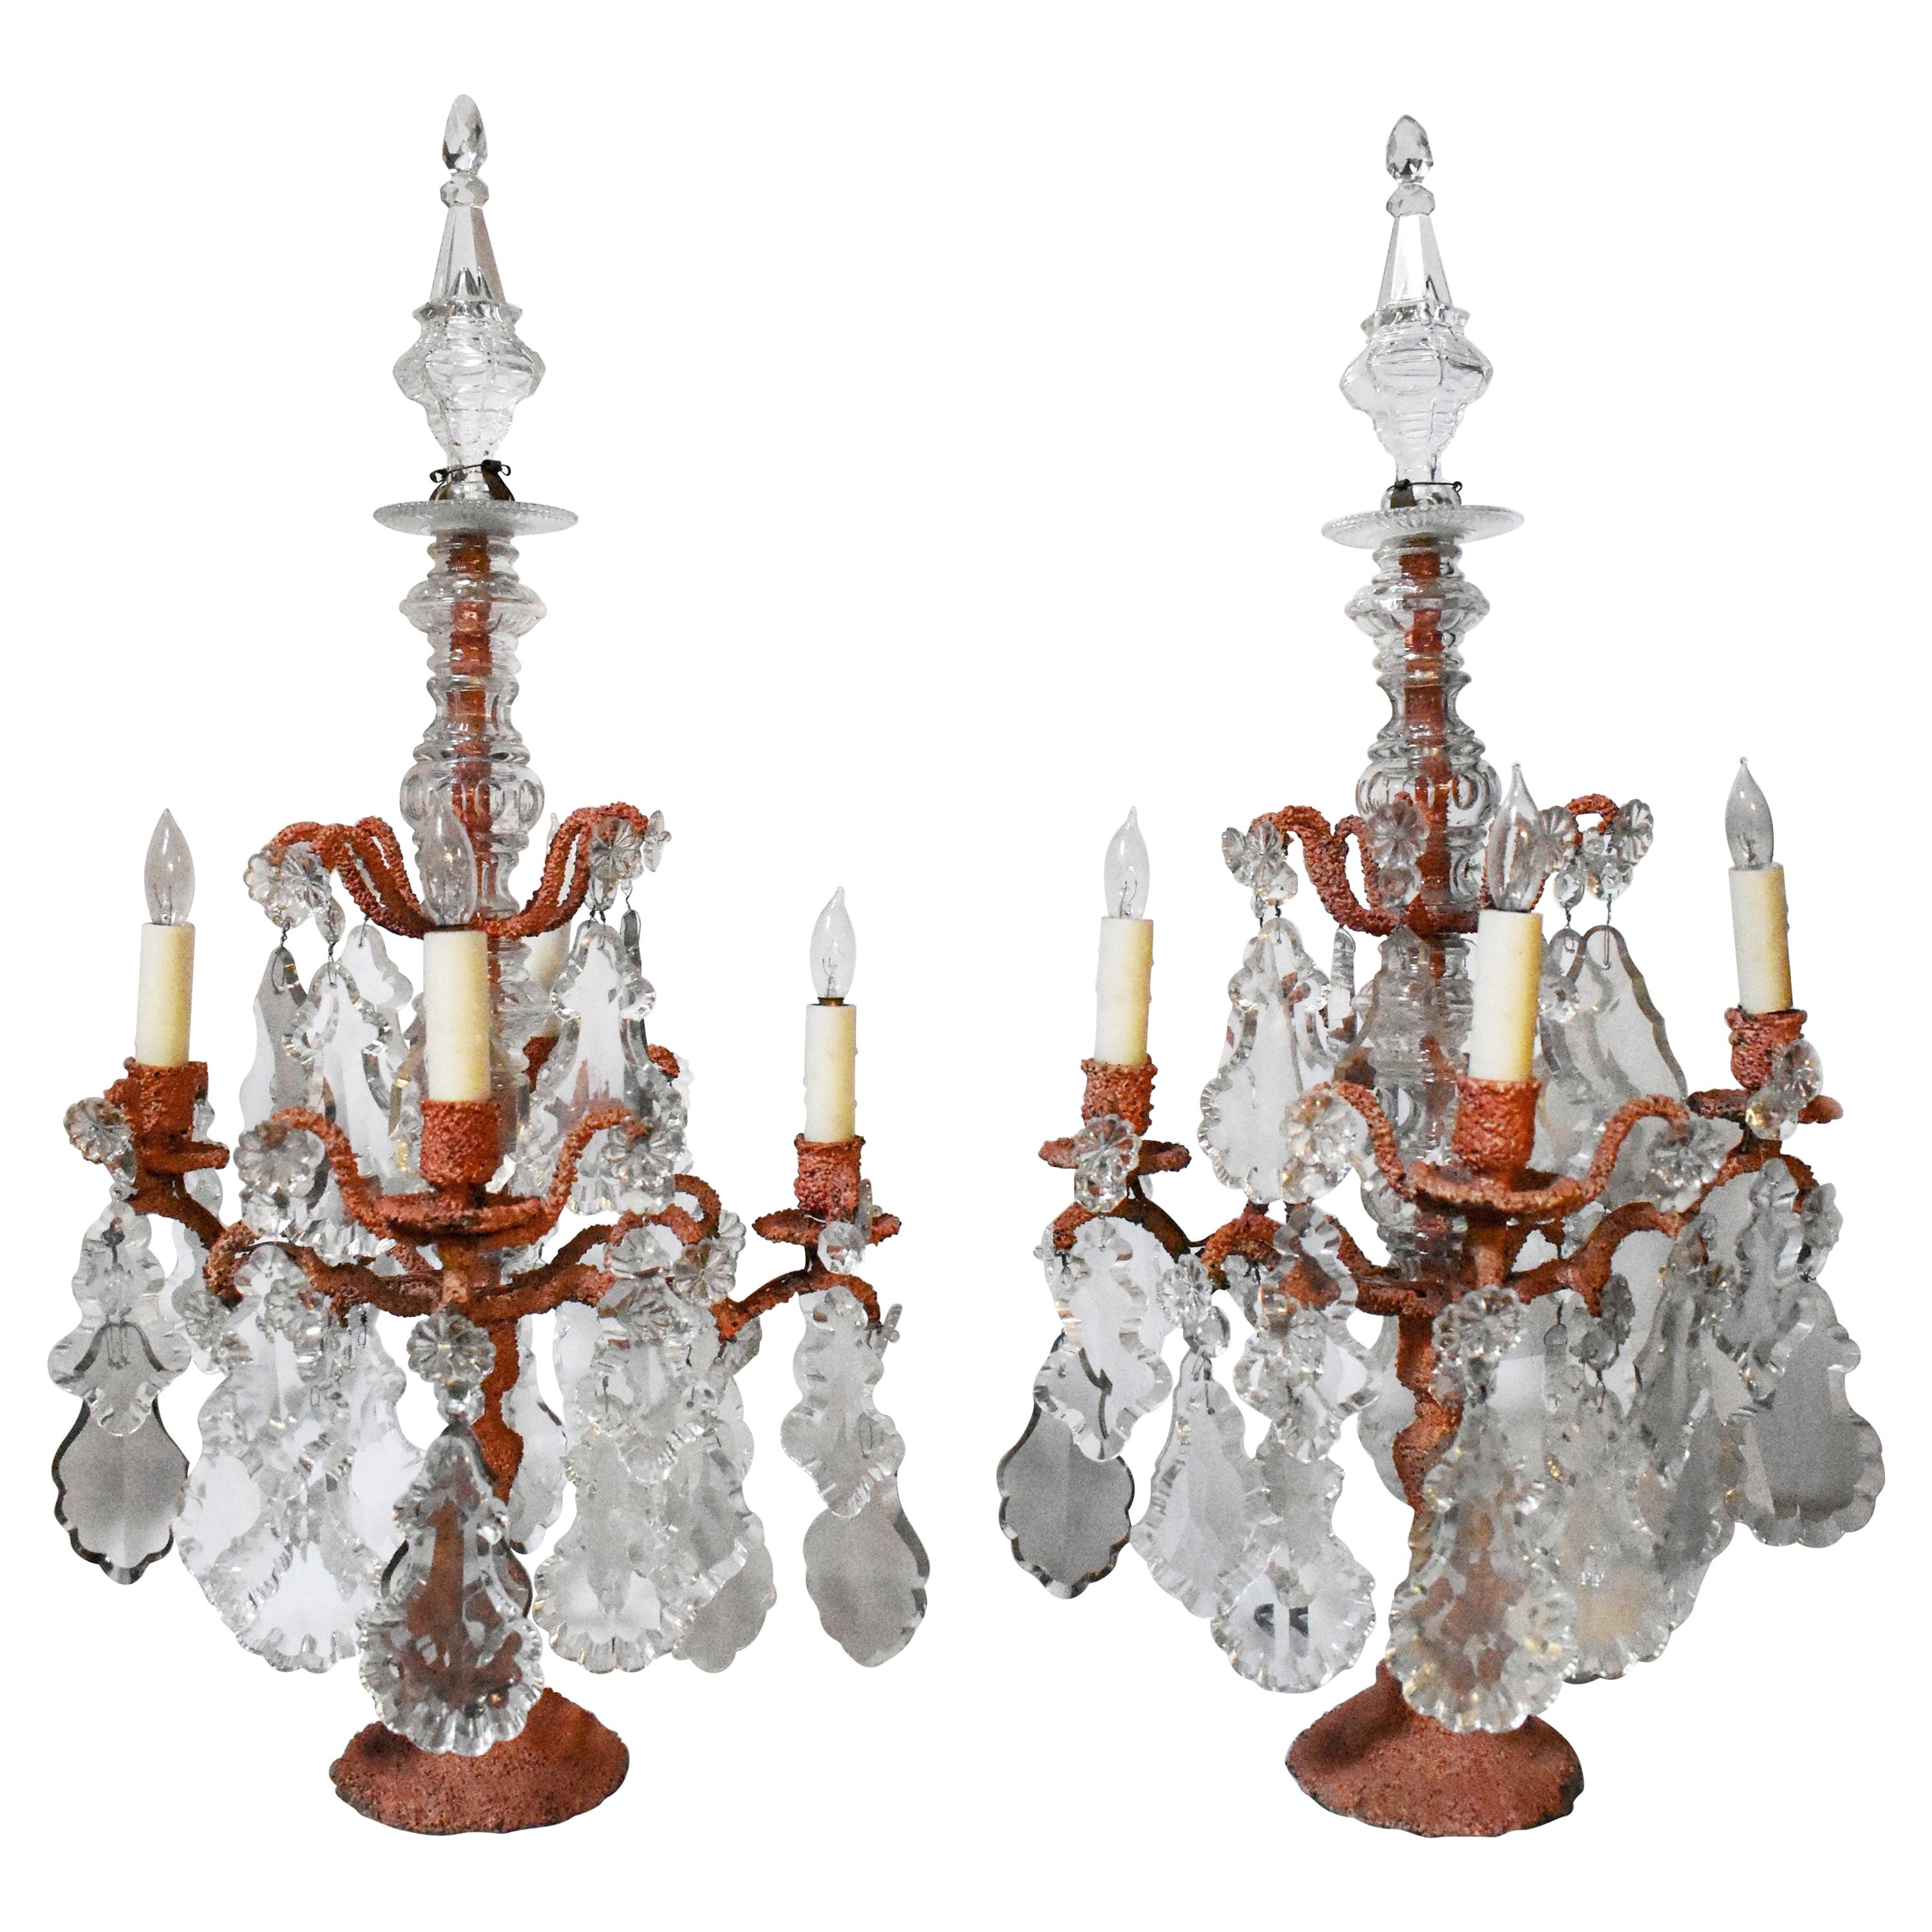 Paar Girandolen-Kandelaber aus Koralle und Bronze mit 4 Lichtern, 19. Jahrhundert